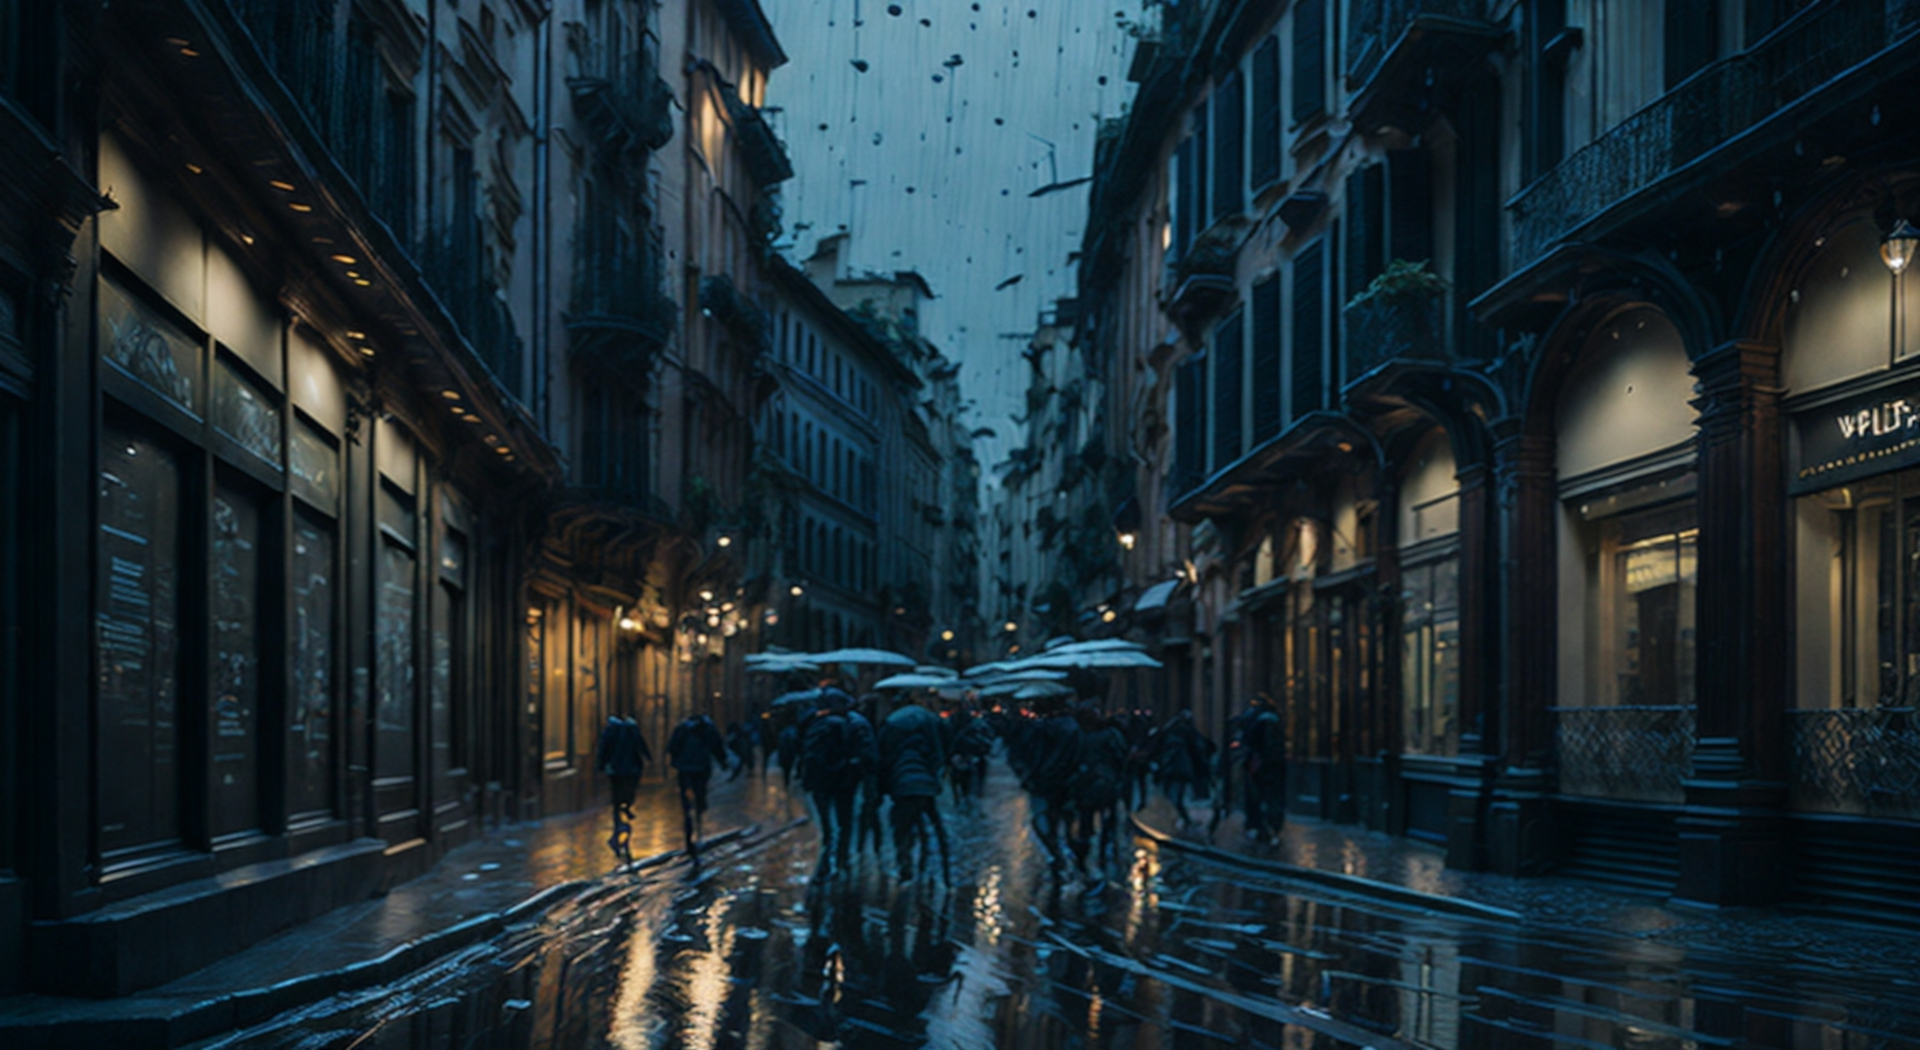 Milano sotto la pioggia